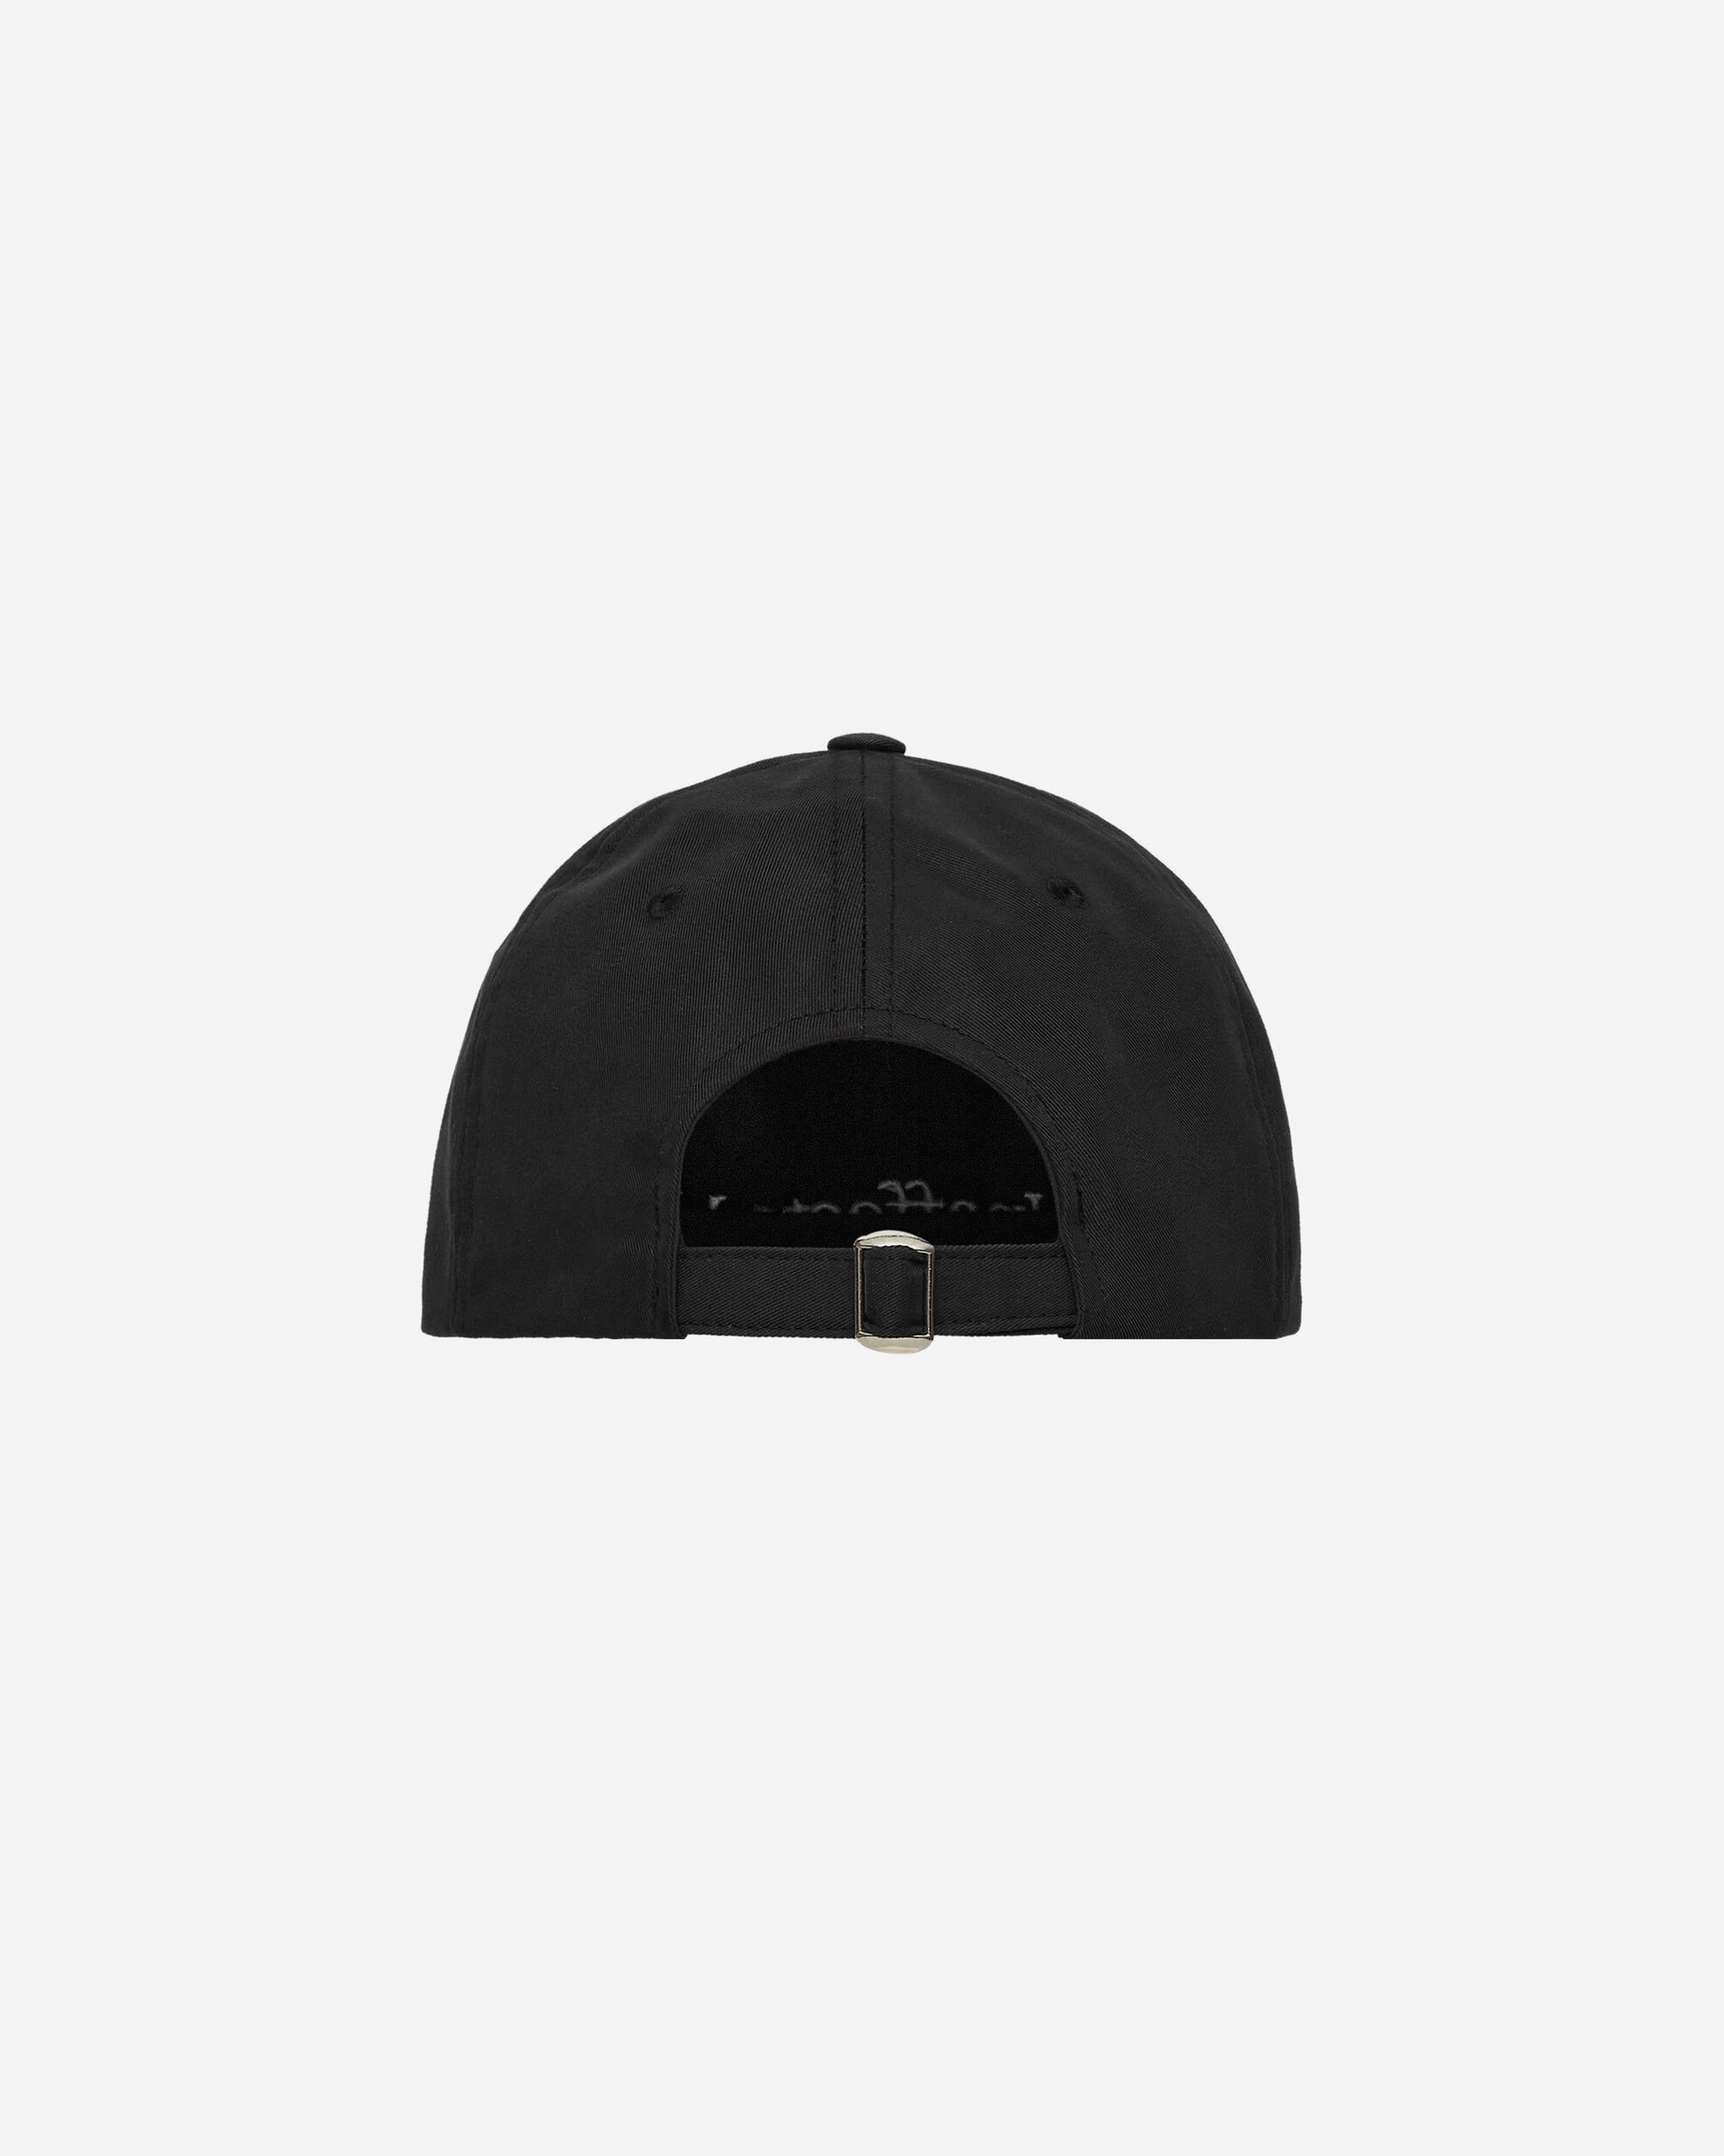 Unaffected Damaged Logo Ball Cap Black Hats Caps UN24SSBC04 BLACK